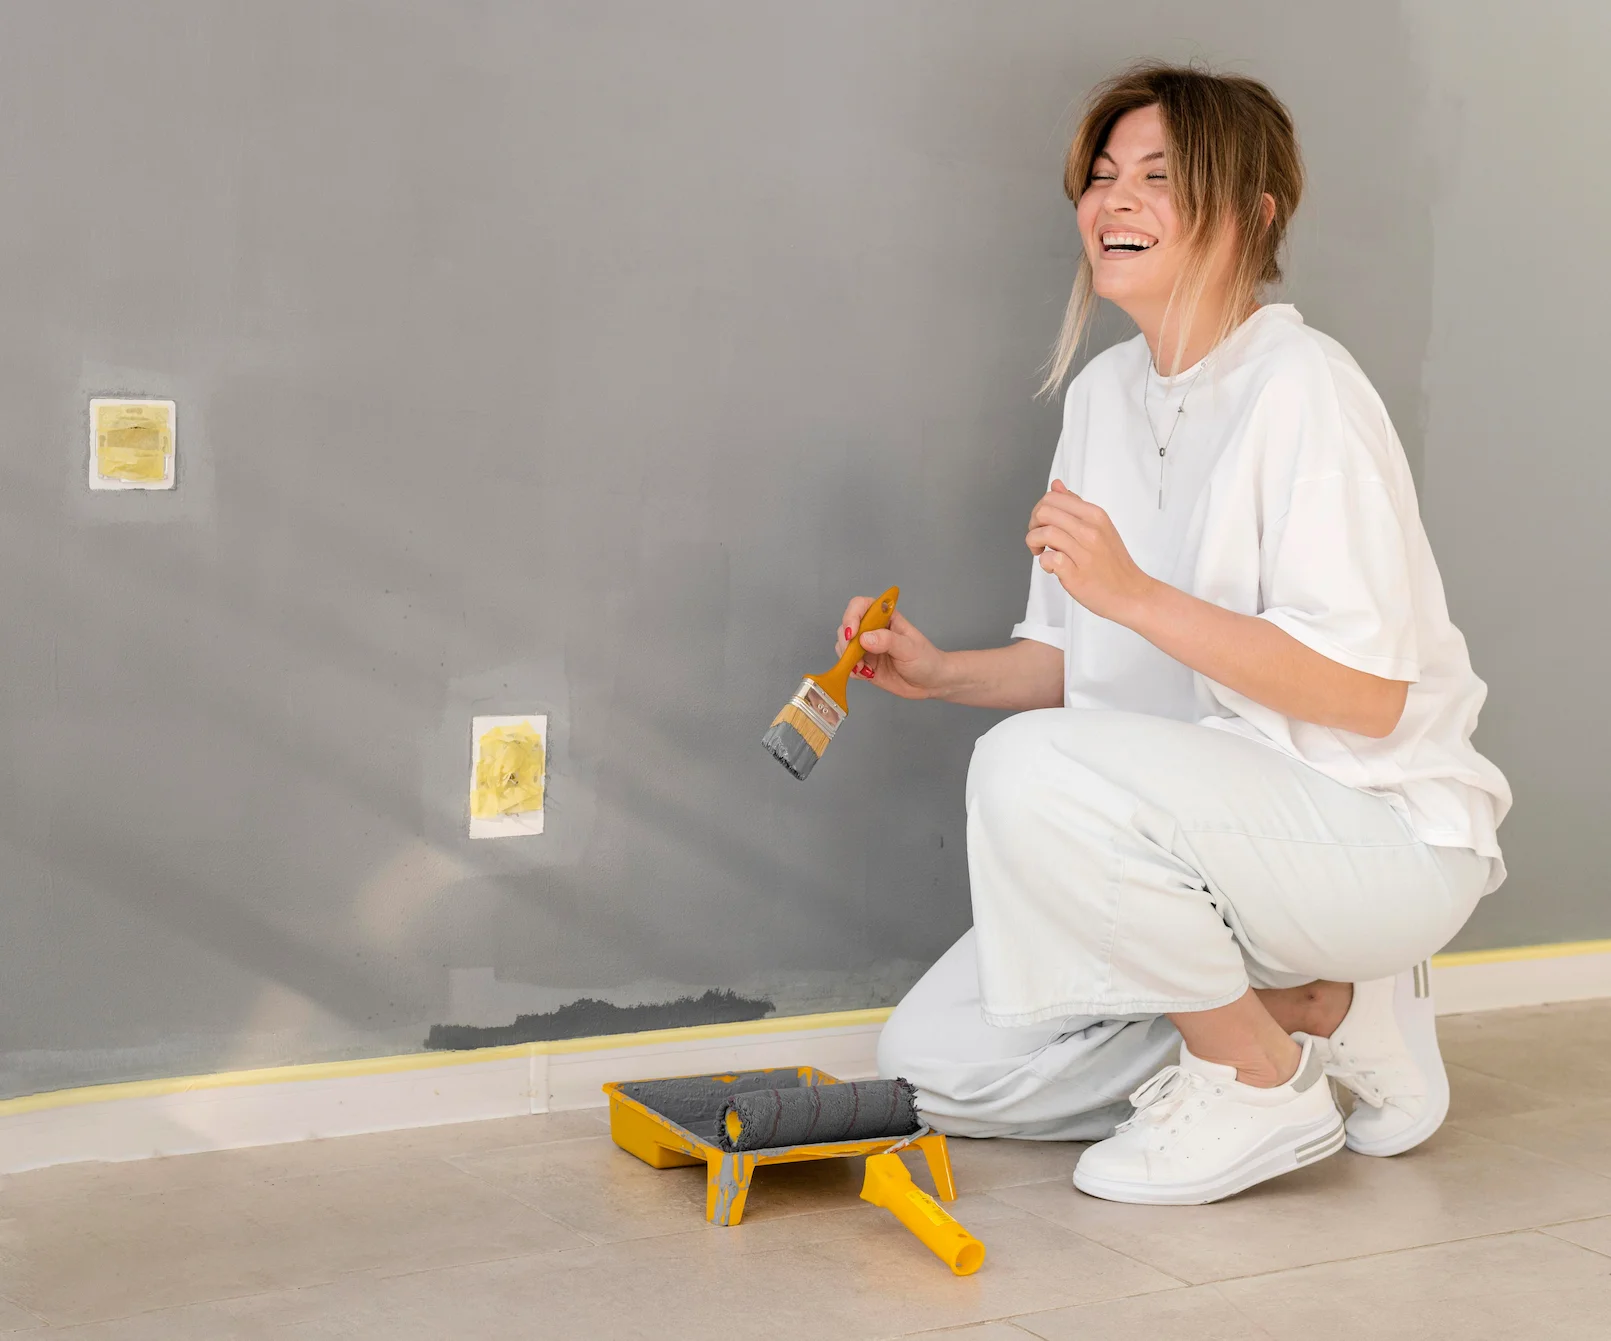 Descubre los pasos esenciales para preparar una pared antes de pintar. Consejos y técnicas para un resultado perfecto en tus proyectos de pintura.